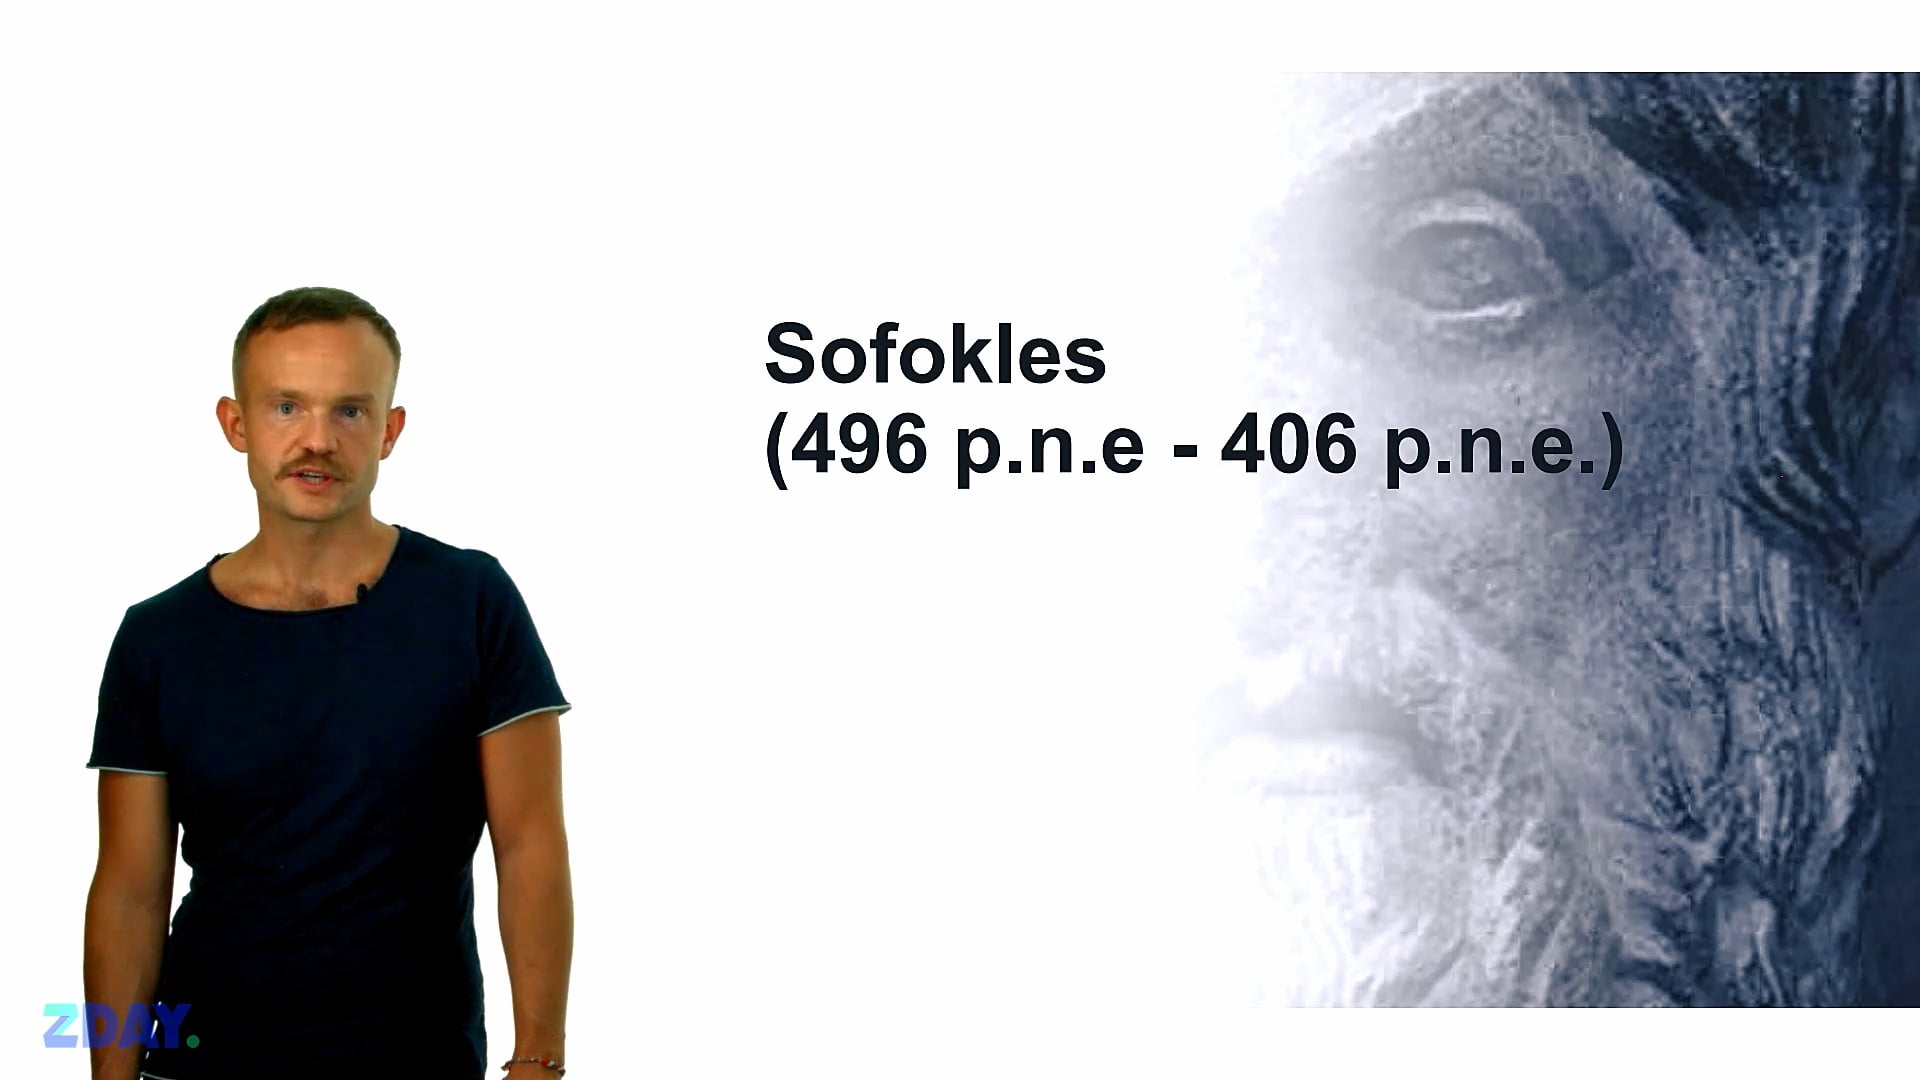 Miniaturka materiału wideo na temat: Sofokles – o autorze. Kliknij, aby obejrzeć materiał.